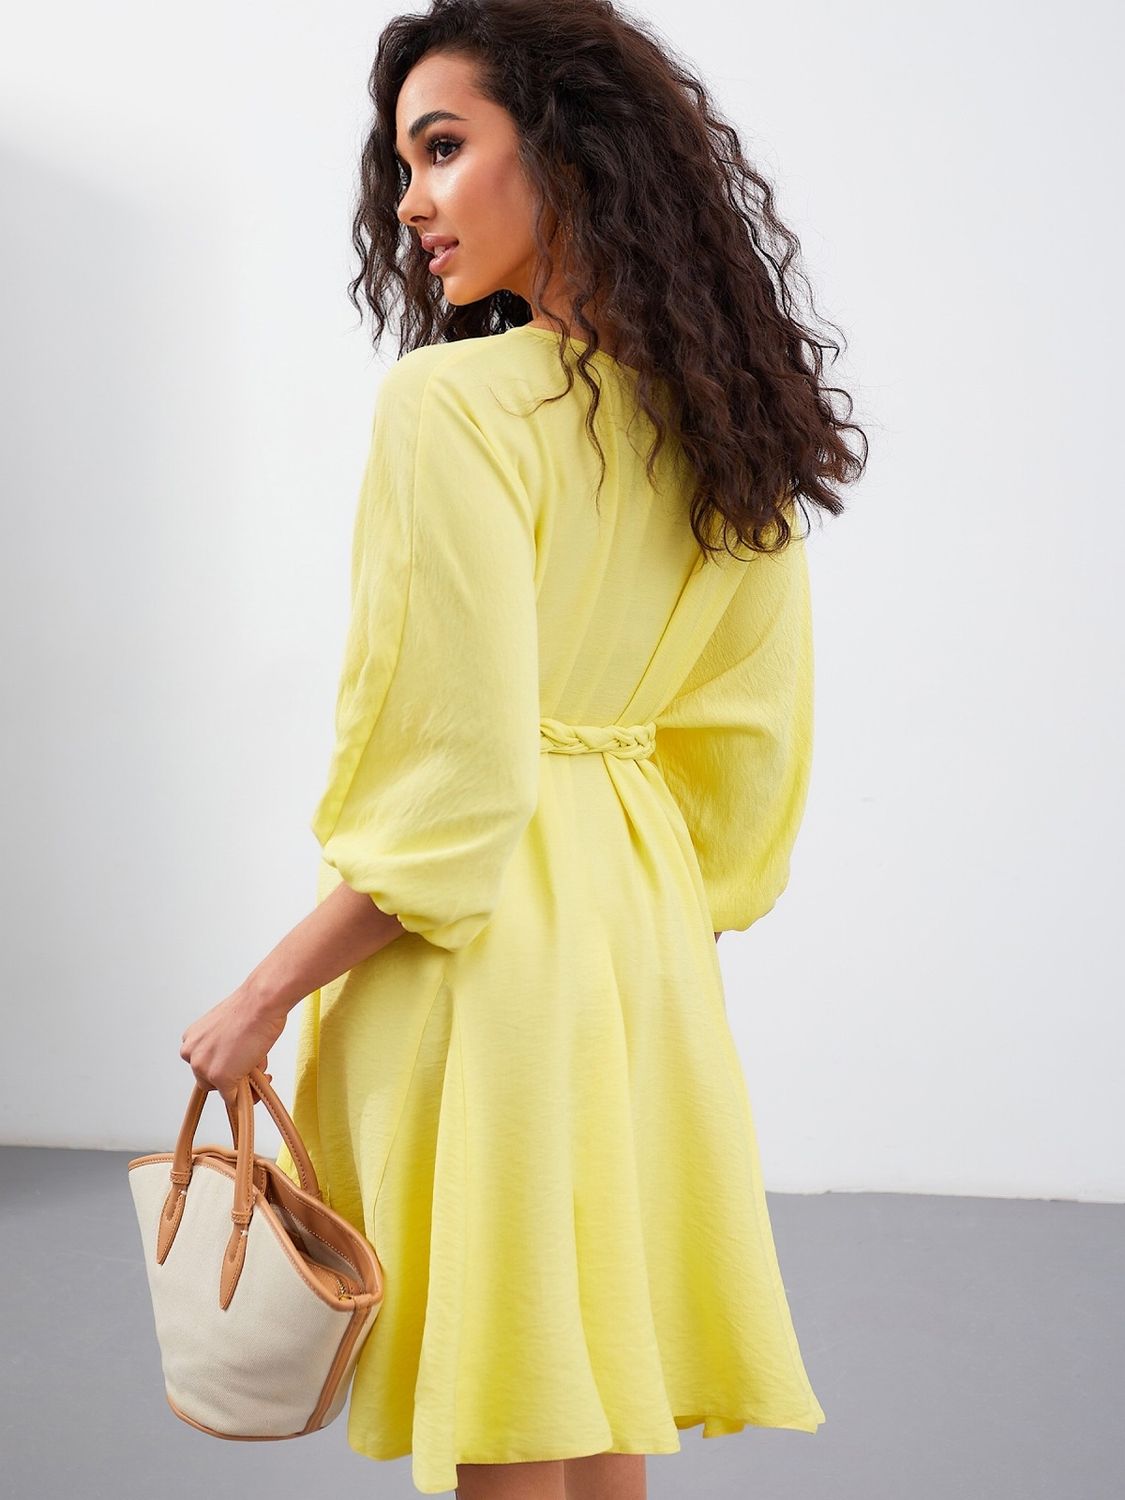 Яркое летнее платье трапеция желтого цвета - фото